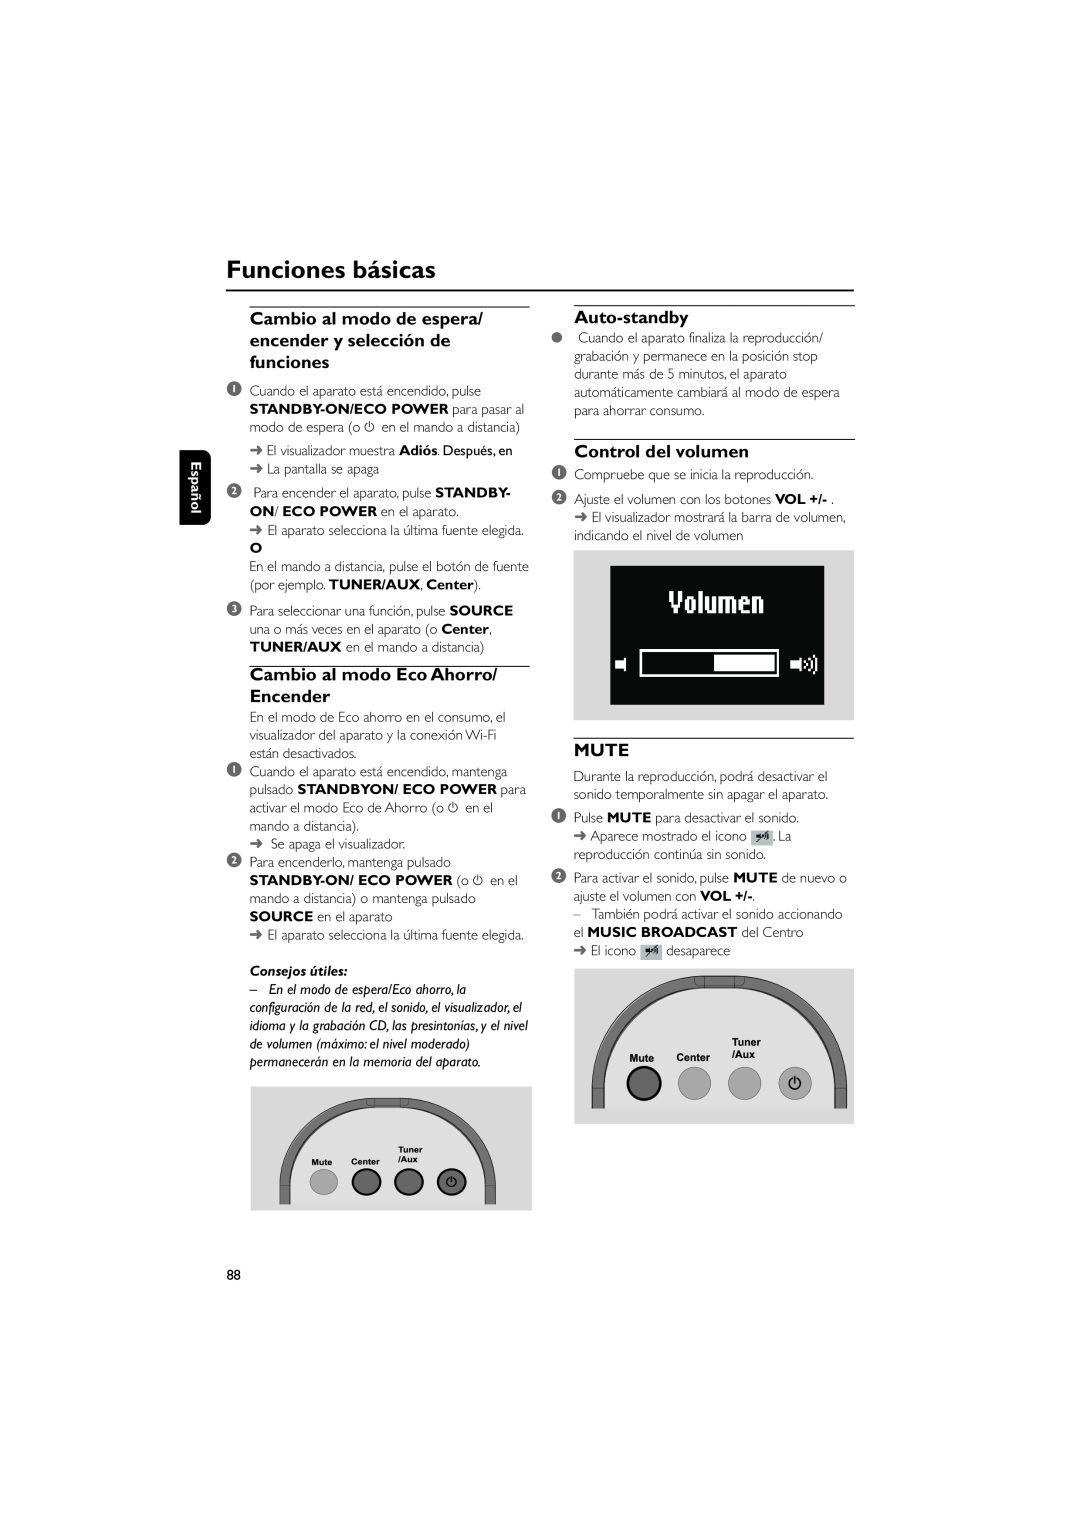 Philips WAS700 Funciones básicas, Cambio al modo Eco Ahorro/ Encender, Auto-standby, Control del volumen, Mute, Español 